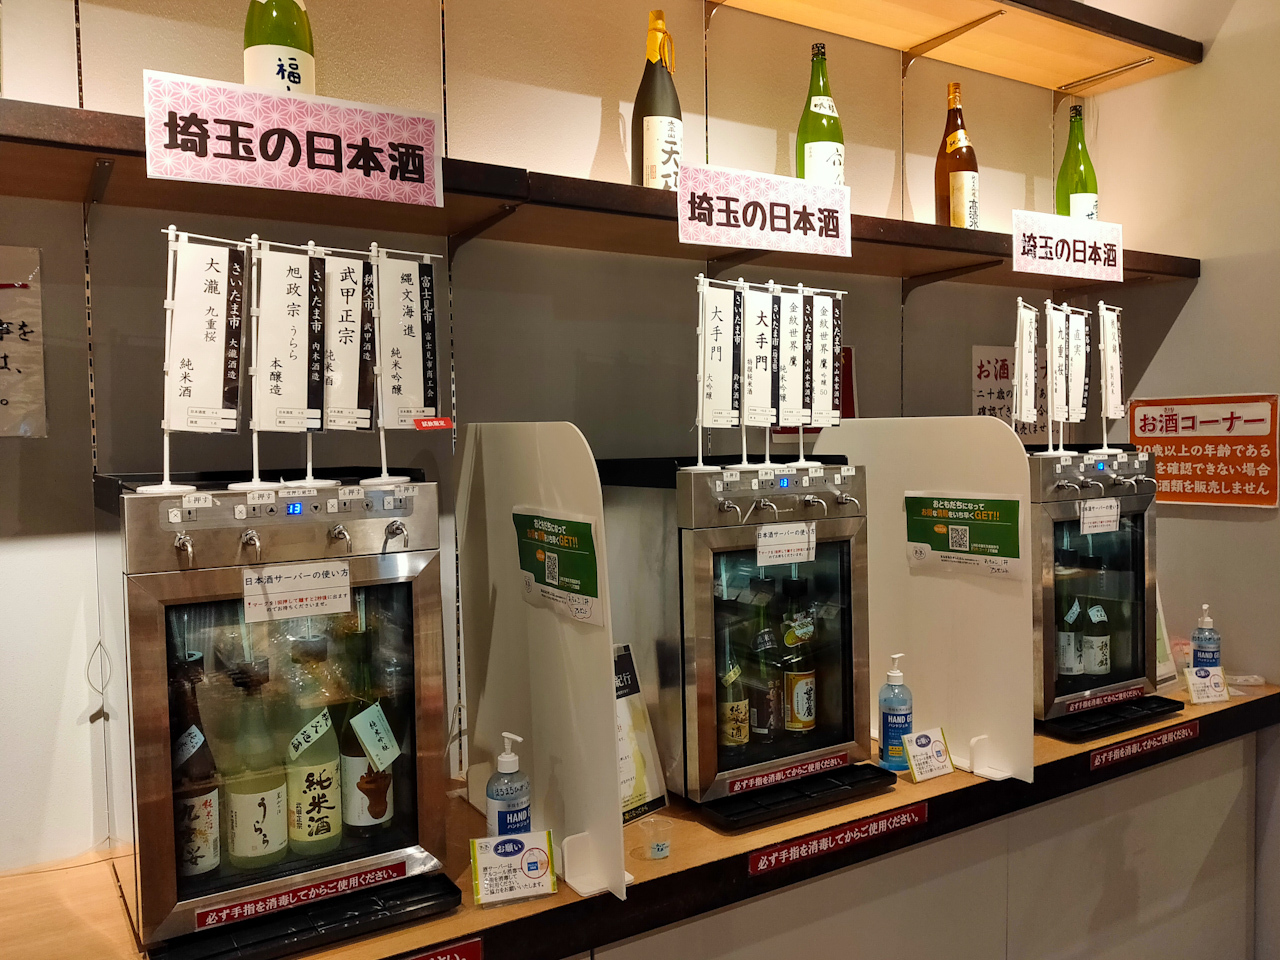 イベント期間中は「まるまるひがしにほん」内の日本酒試飲スペースにさいたま市・埼玉県内の日本酒が増えています